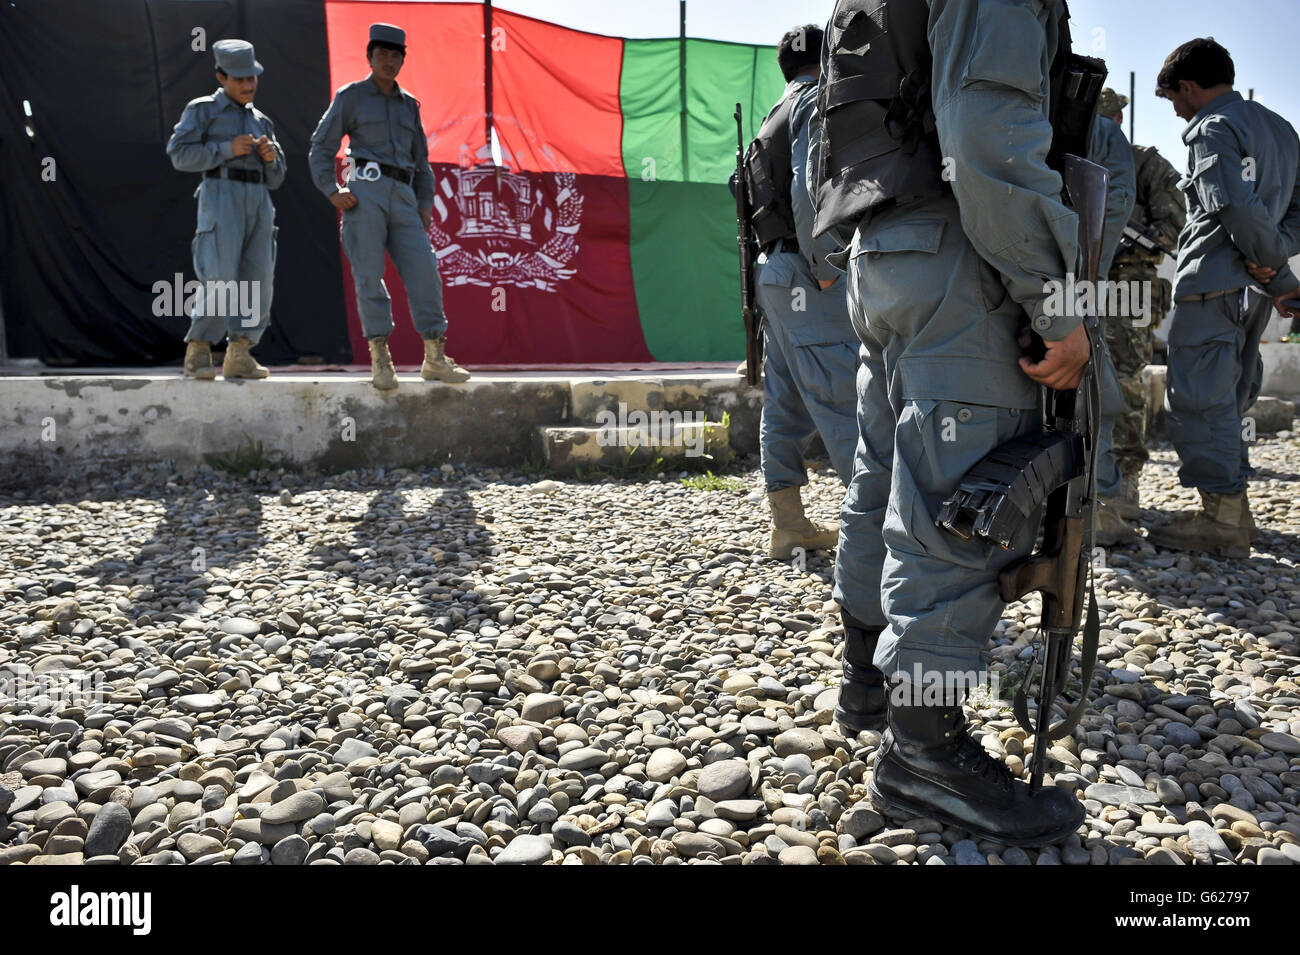 Police nationale afghane à l'intérieur de l'enceinte située au 1 QG de Kandak, près de la base de patrouille Attal, province de Helmand, Afghanistan. Banque D'Images